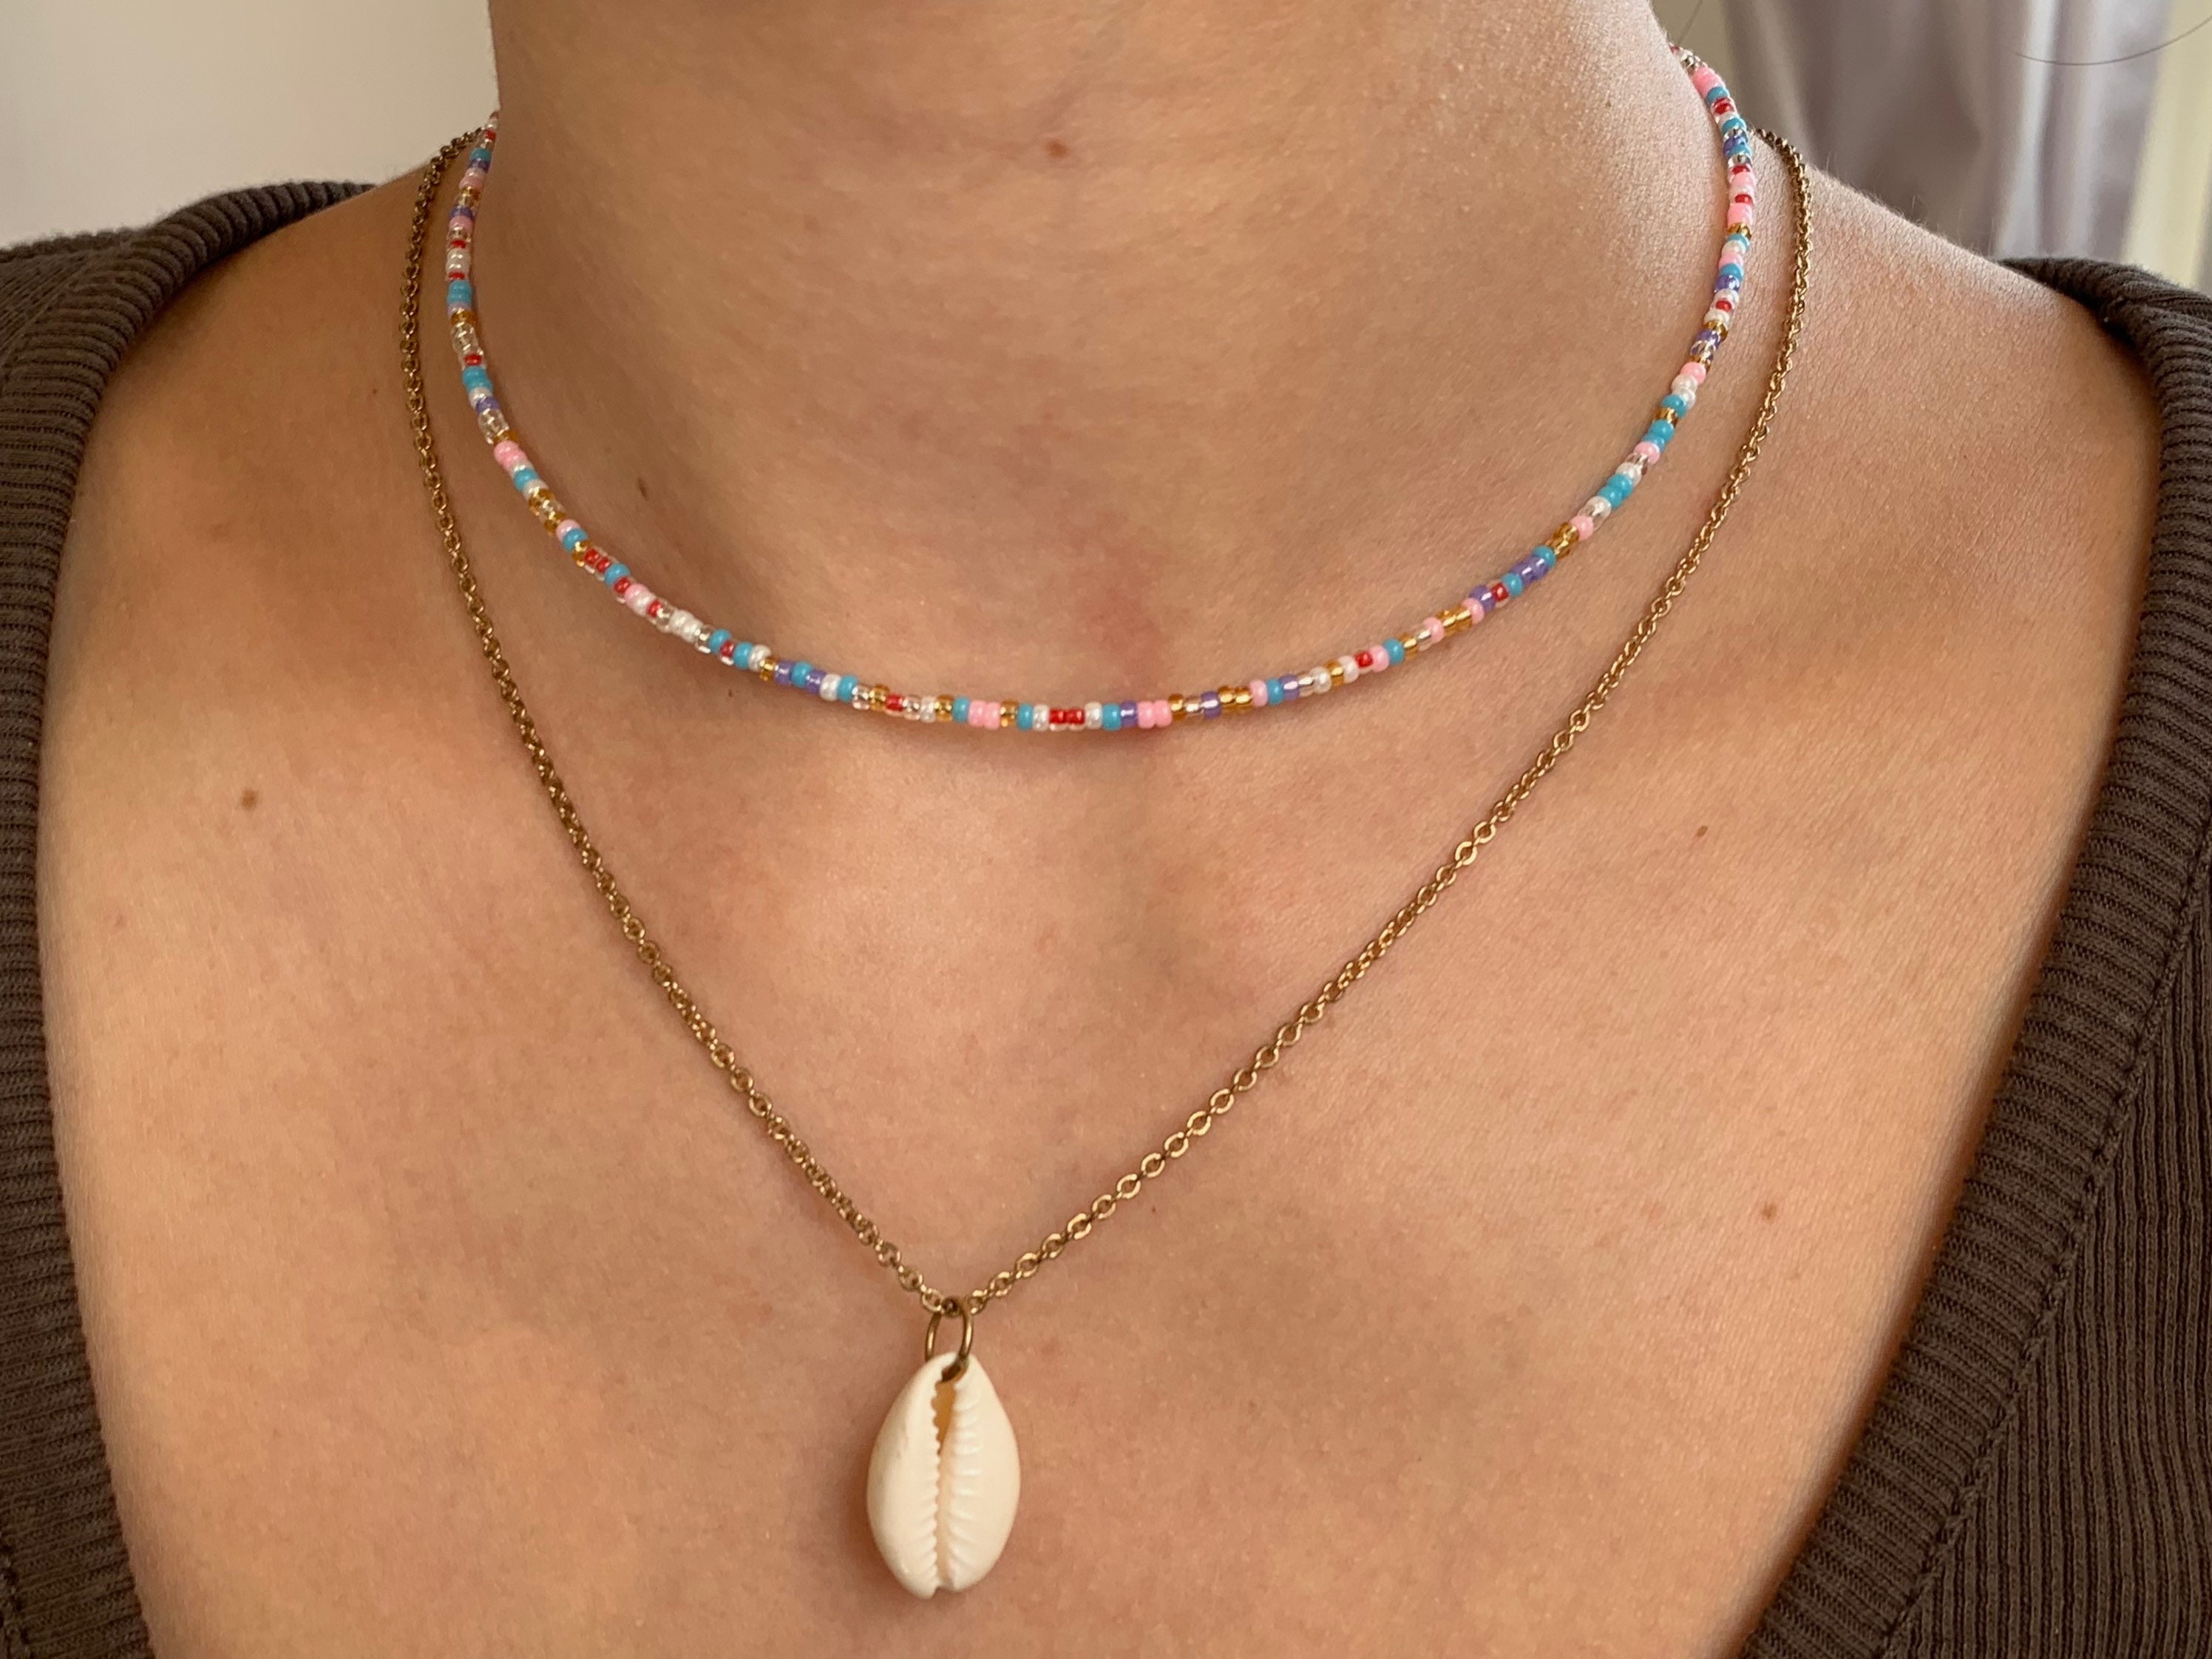 Personalisierbar Rocailles bunt Kette Choker Glasperlen Süßwasserperlen Perlenkette Lelia Bunt